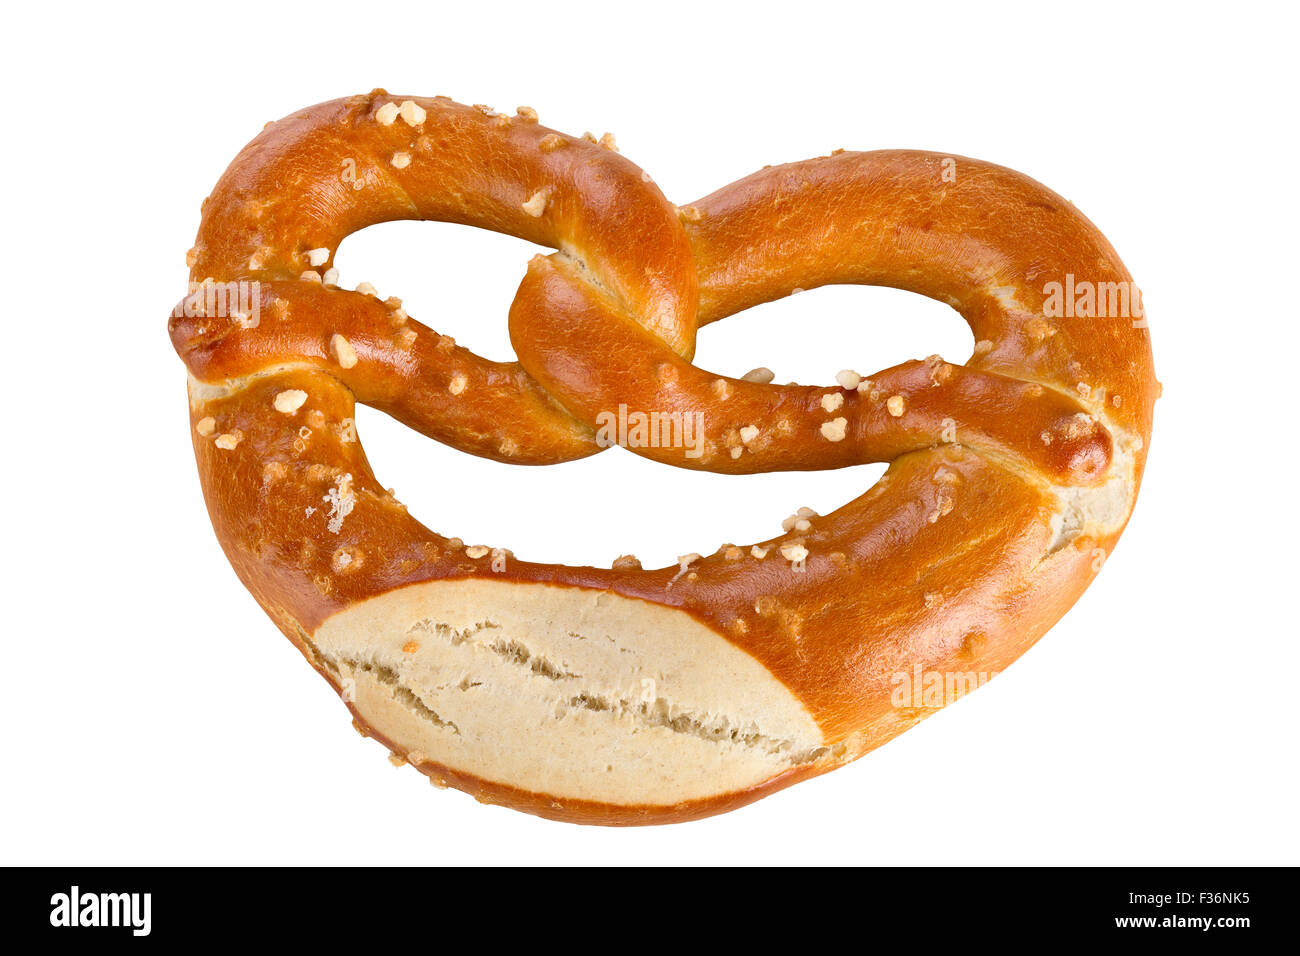 Eine Brezel ist eine Art gebackenes Brot Produkt aus Teig geformt am häufigsten zu einem Knoten, isoliert auf weißem Hintergrund. Stockfoto